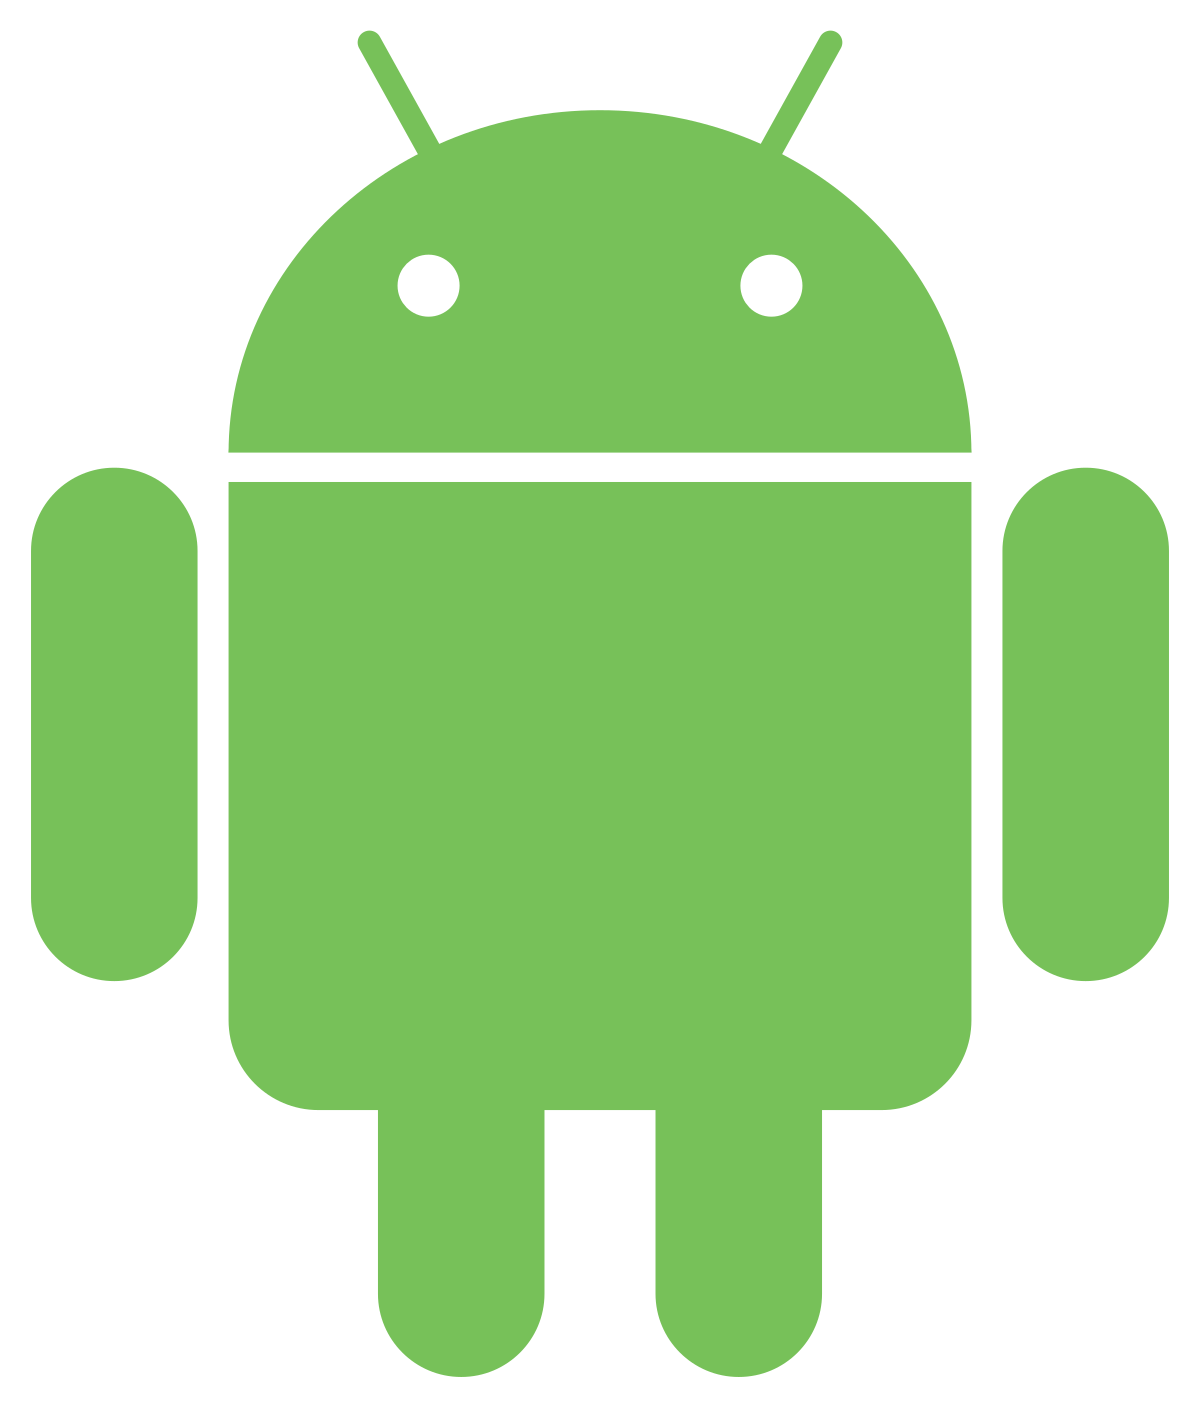 Imagem mostra o robô que serve de logotipo ao Android